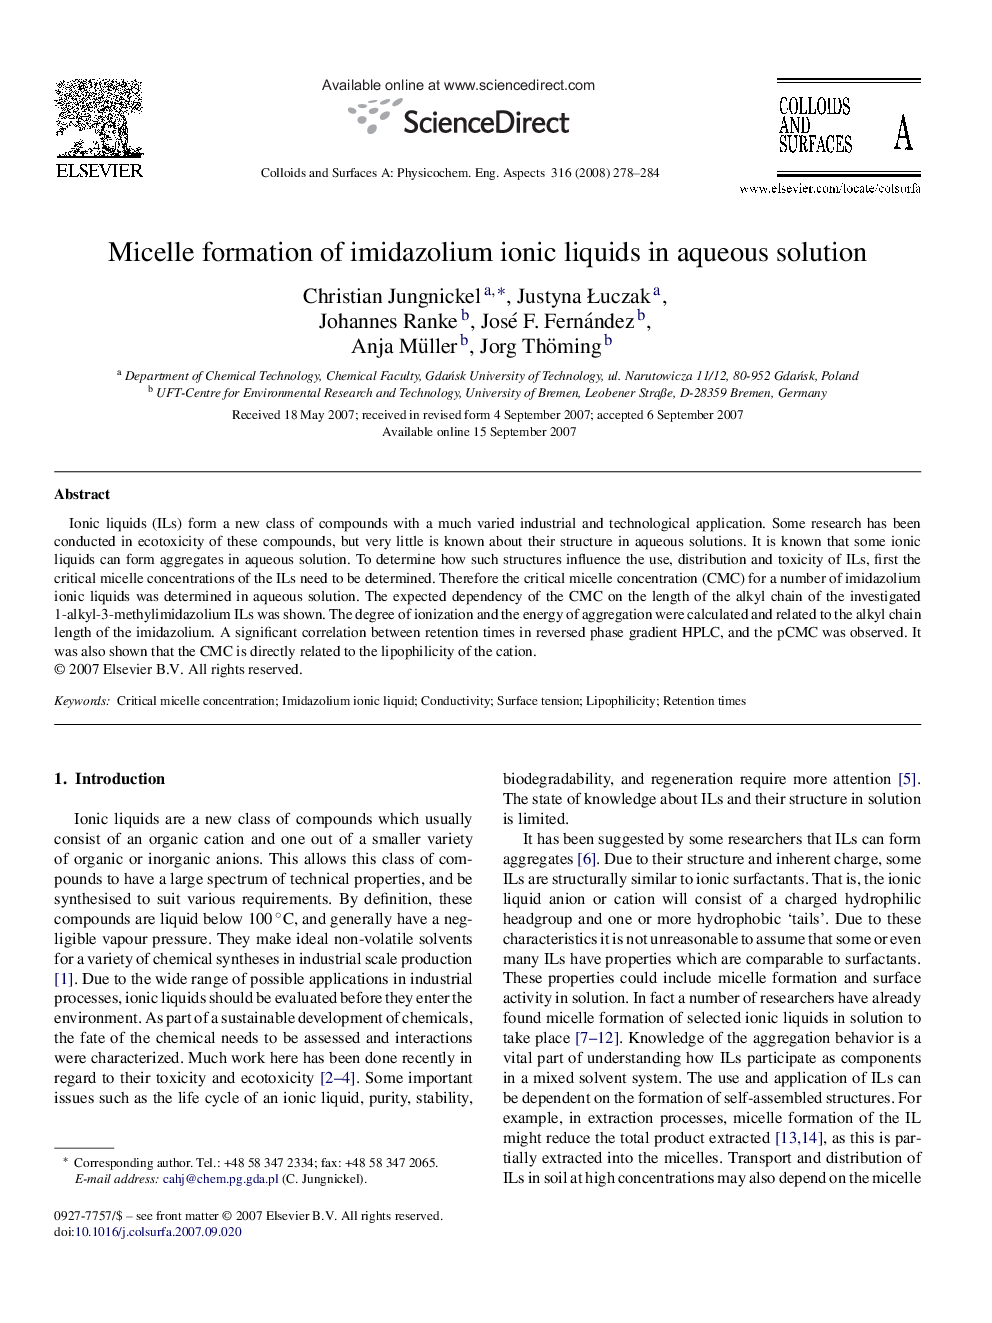 Micelle formation of imidazolium ionic liquids in aqueous solution